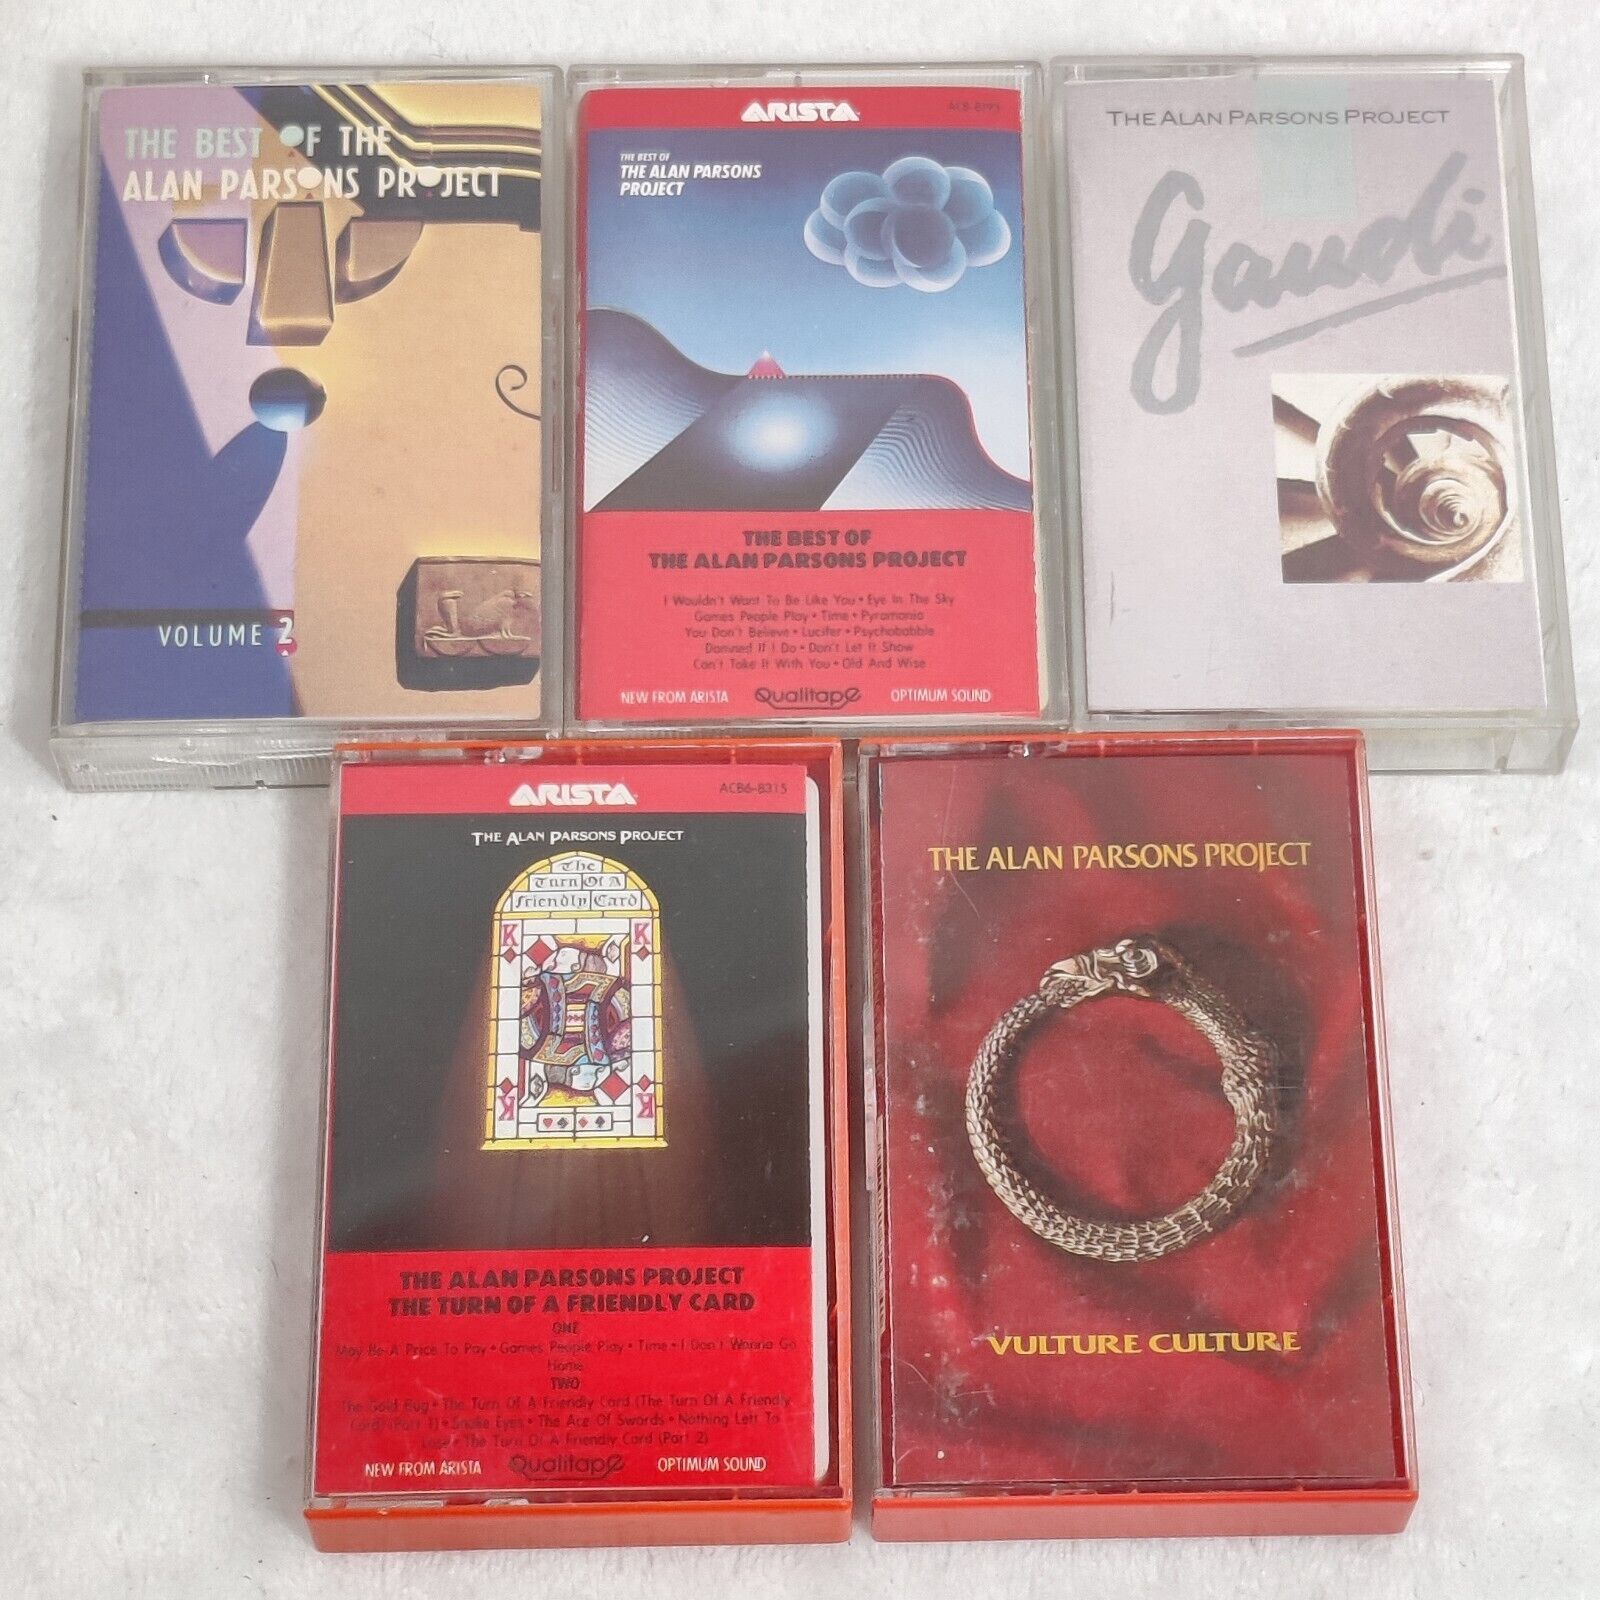 Vintage The Alan Parsons Project cassettes Lot Gaudi Best of Vulture culture